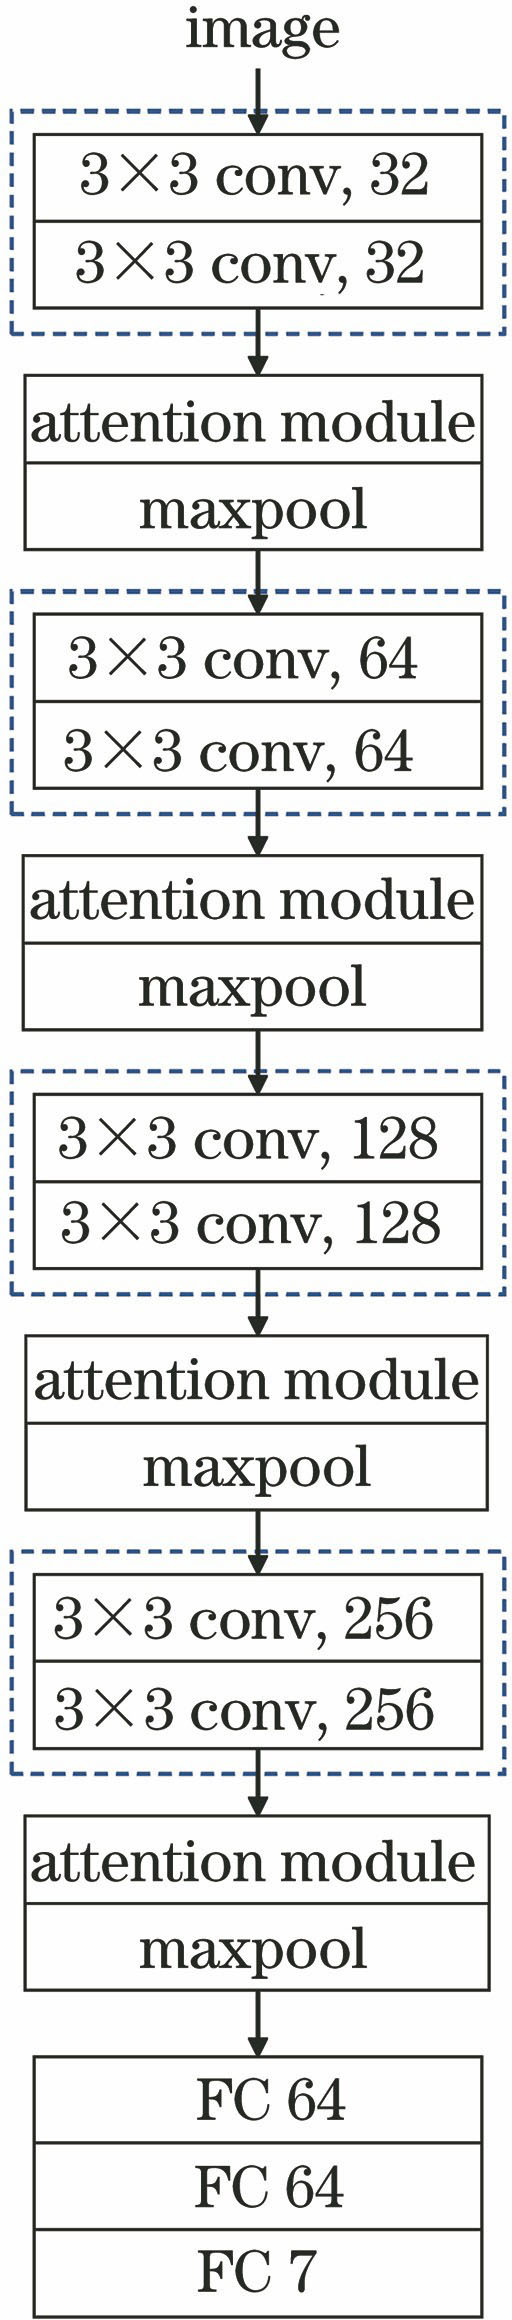 CSACNN model structure